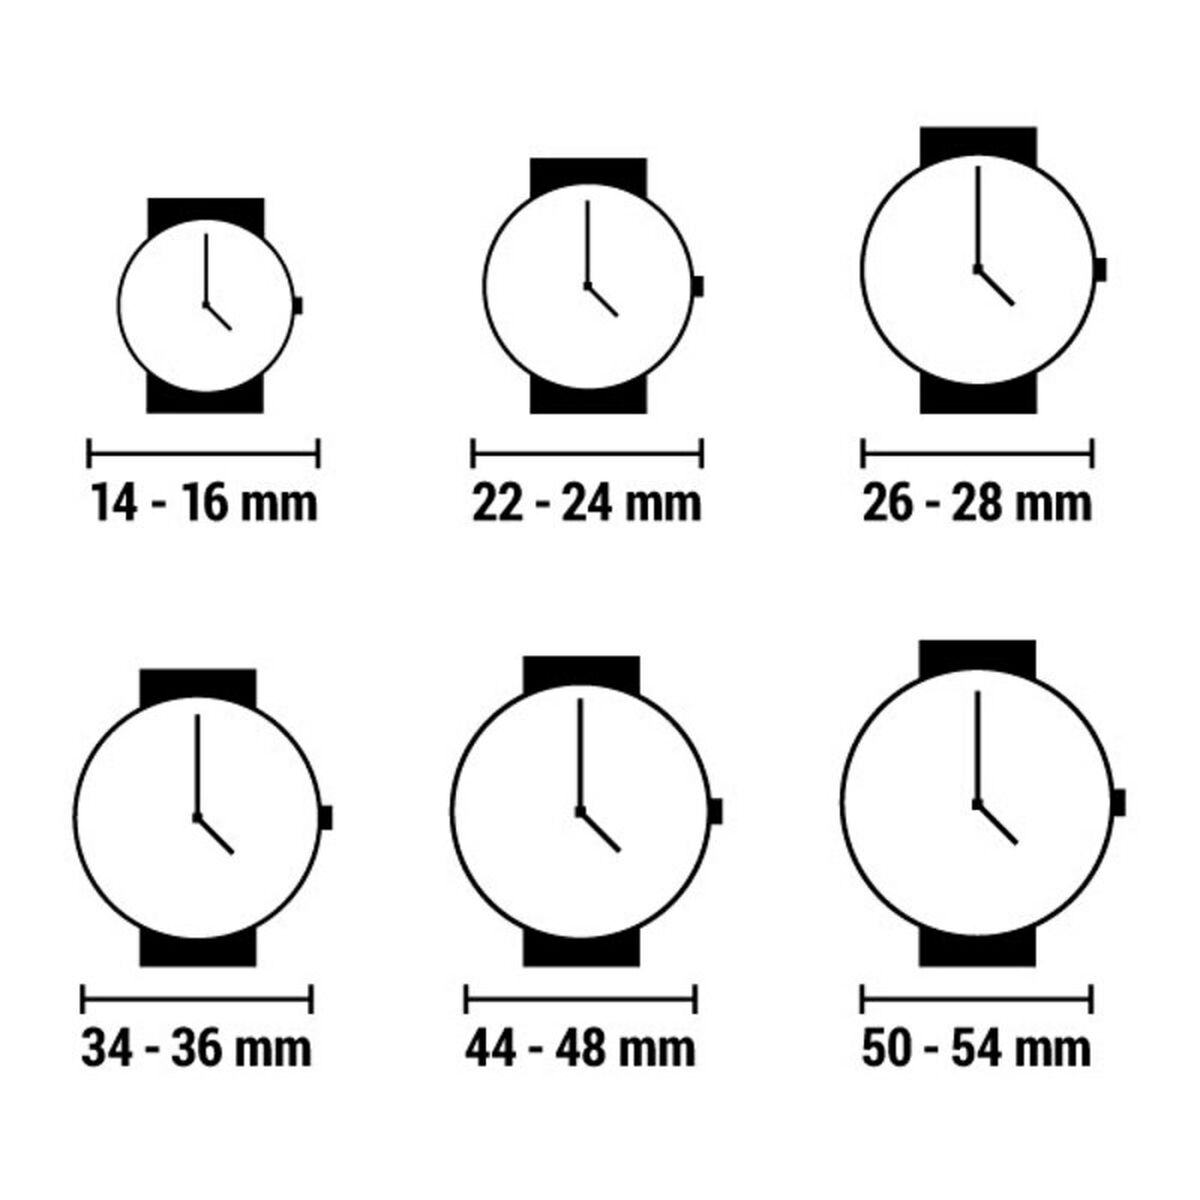 Horloge Dames Time Force TF4154L03 (Ø 40 mm)